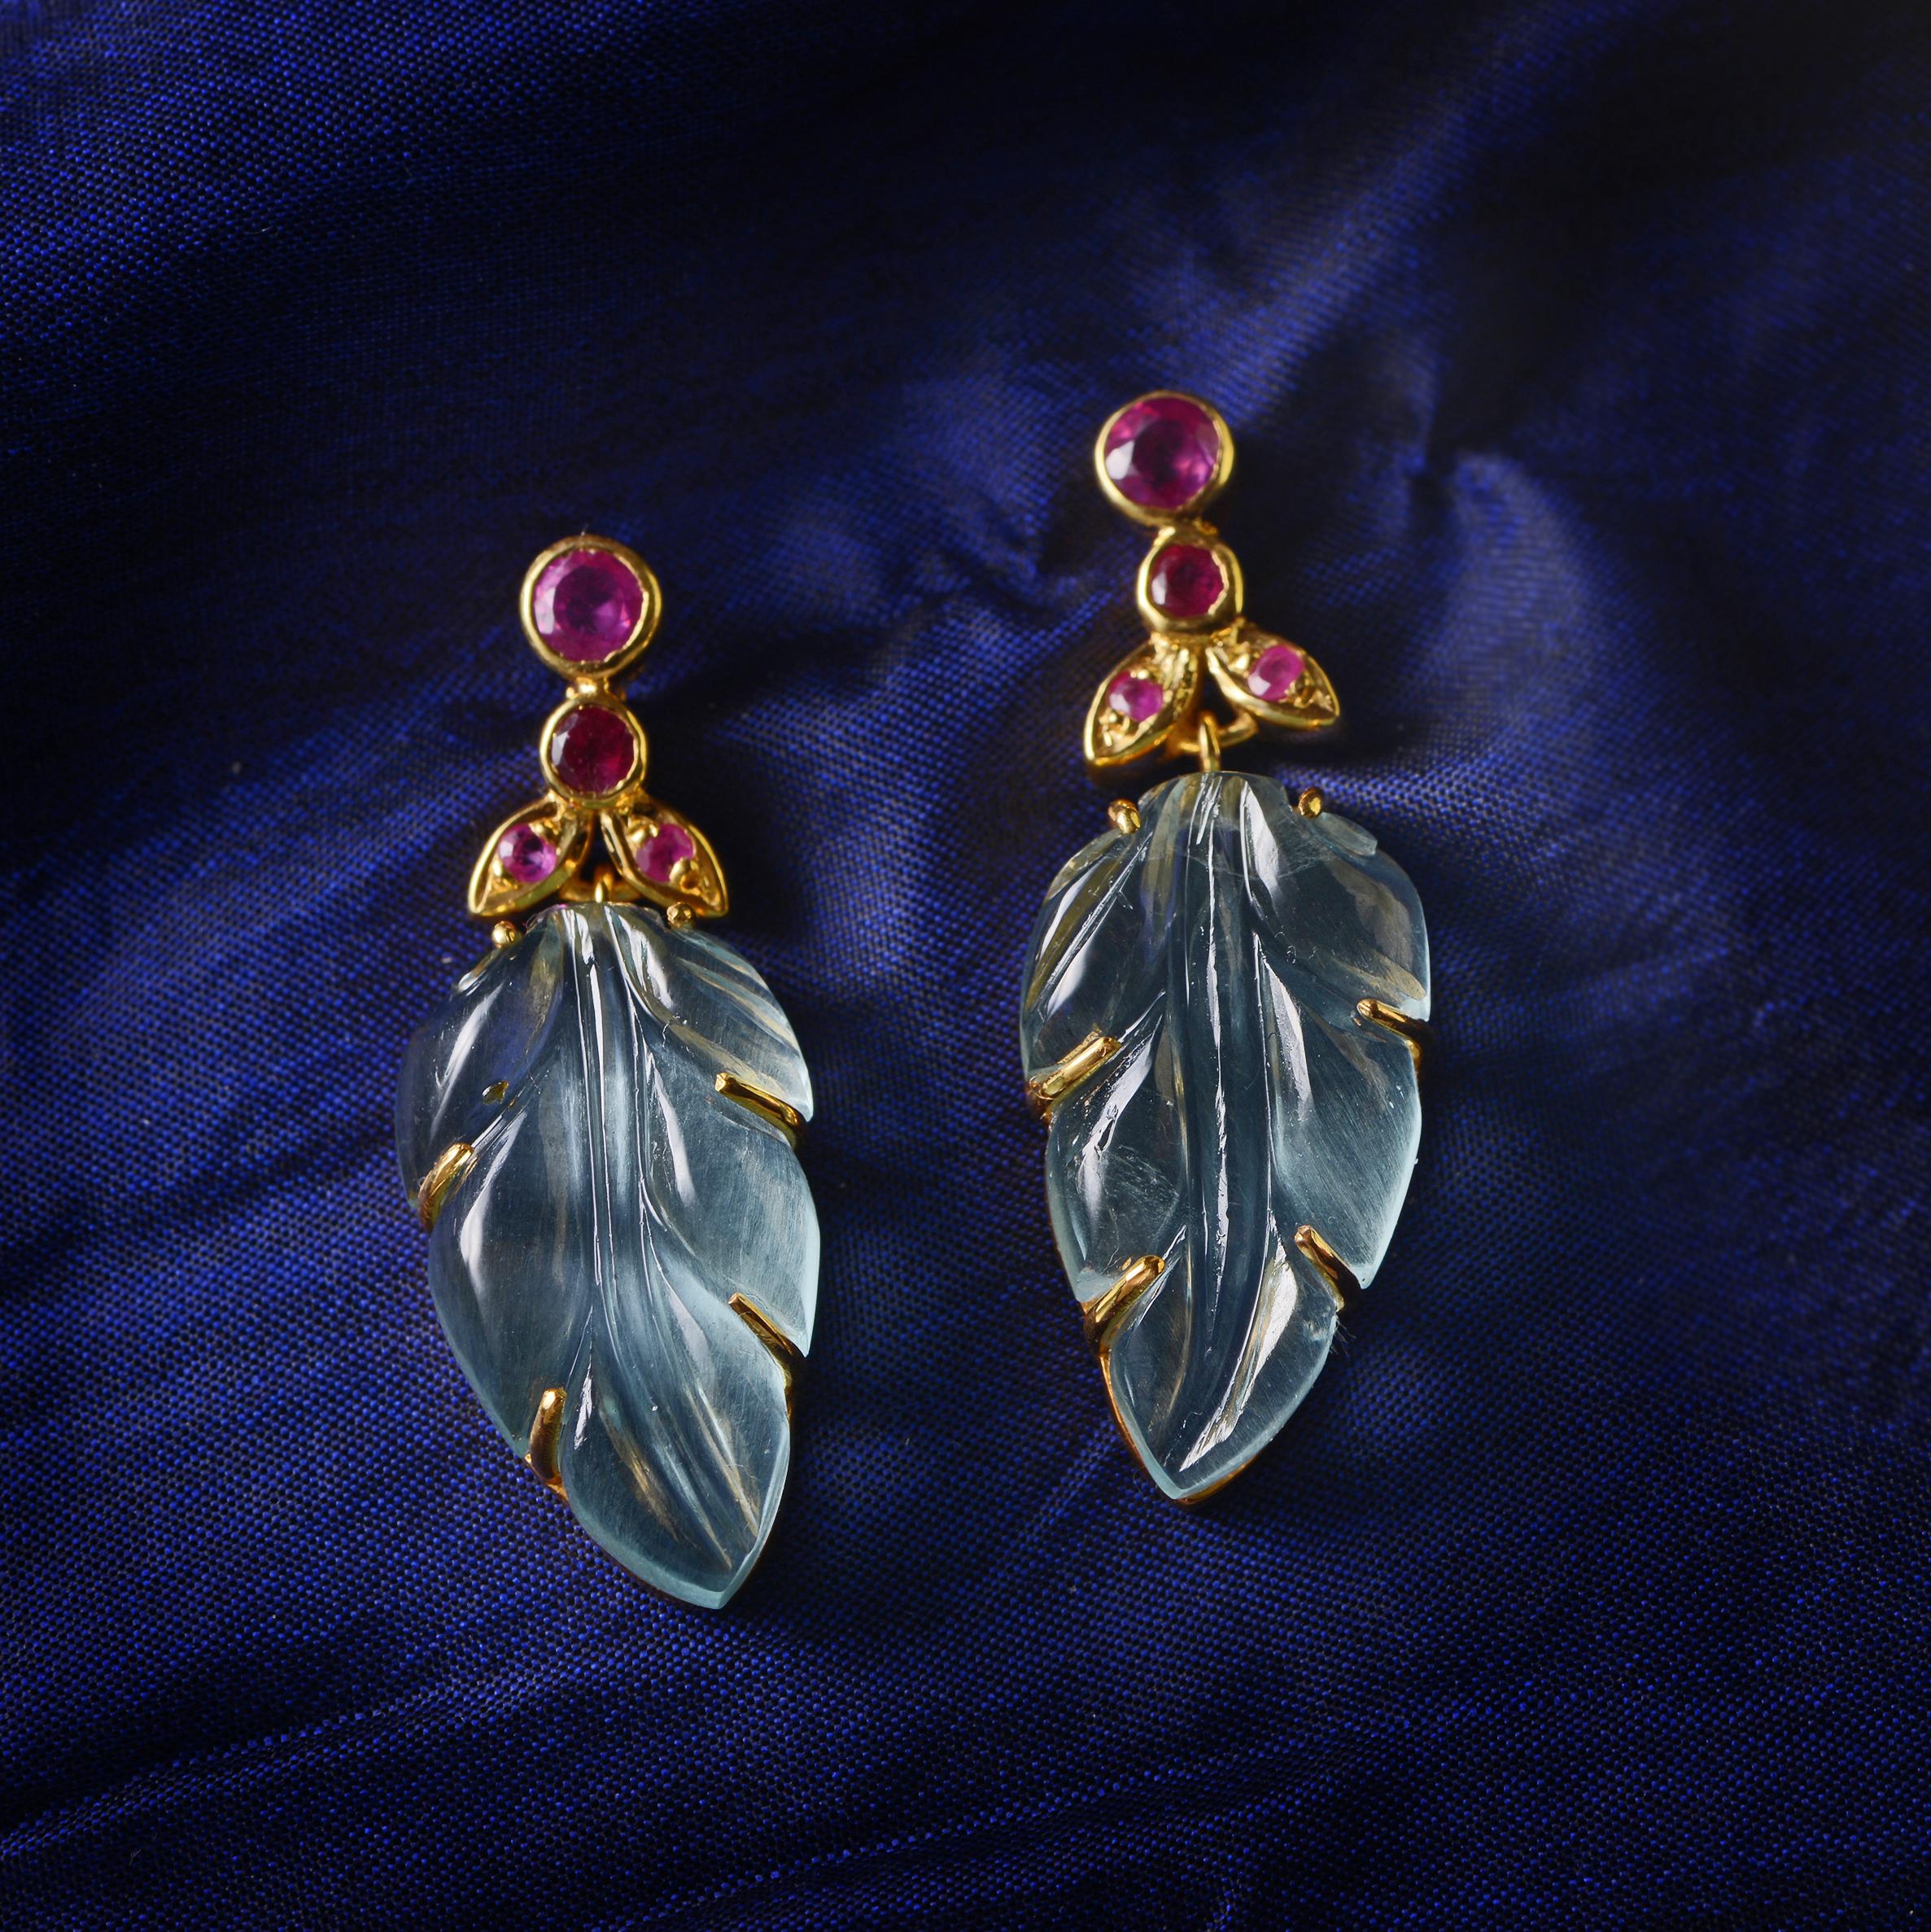 Diese exquisiten, einzigartigen Aquamarin-Ohrringe wurden in unseren Werkstätten nach alter Steinmetzkunst handgeschnitzt und handgraviert. Sie bestehen aus Sterlingsilber, das mit 24-karätigem Gold überzogen ist, und sind mit Rubinen besetzt. Sie